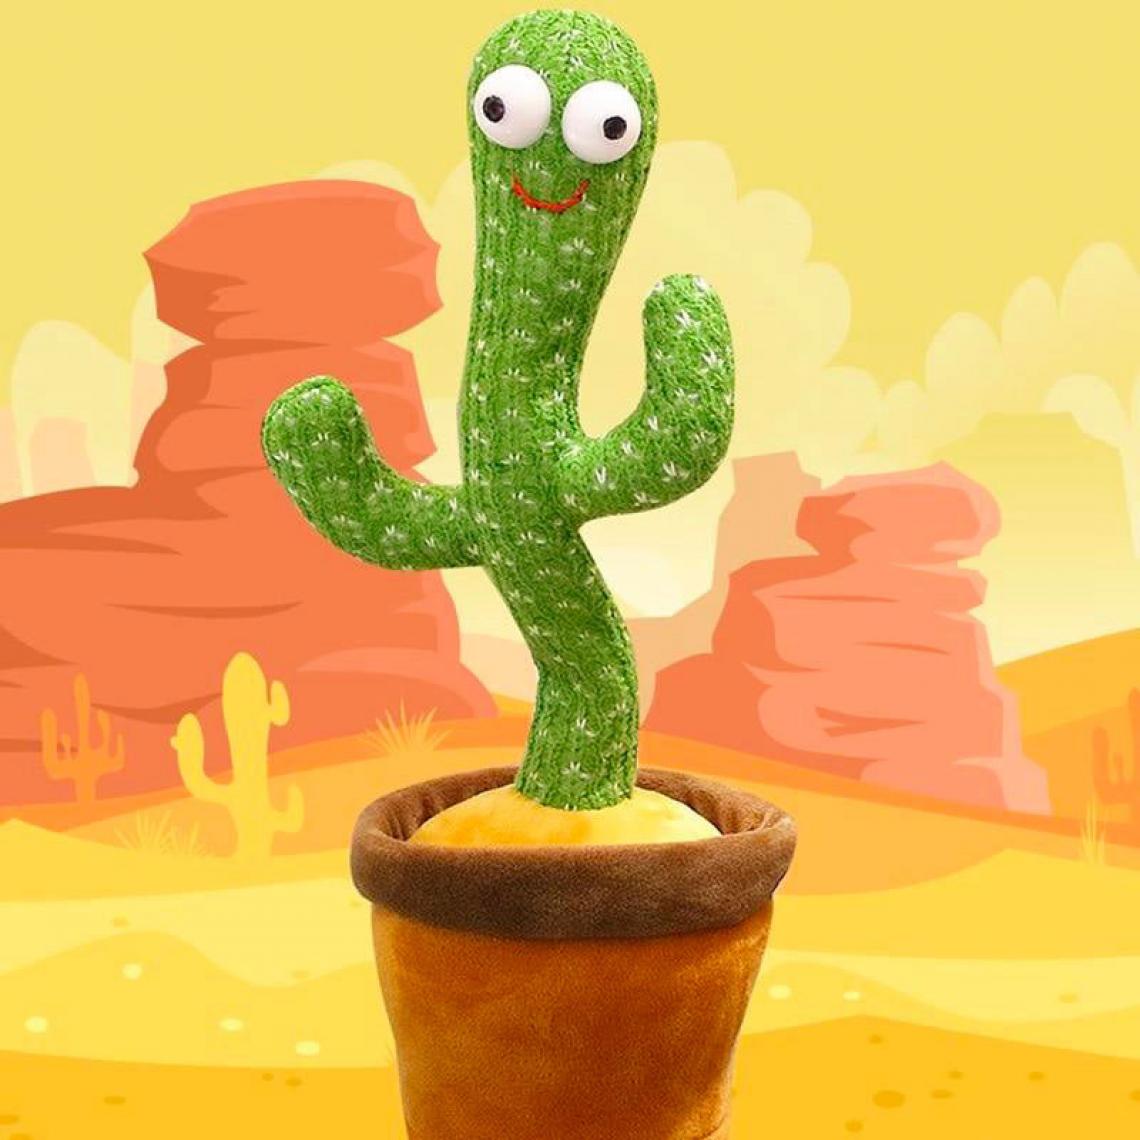 Shop Story - SHOP-STORY - CACTUS GRINGO : Peluche Cactus qui Danse, Chante et Répète - Héros et personnages